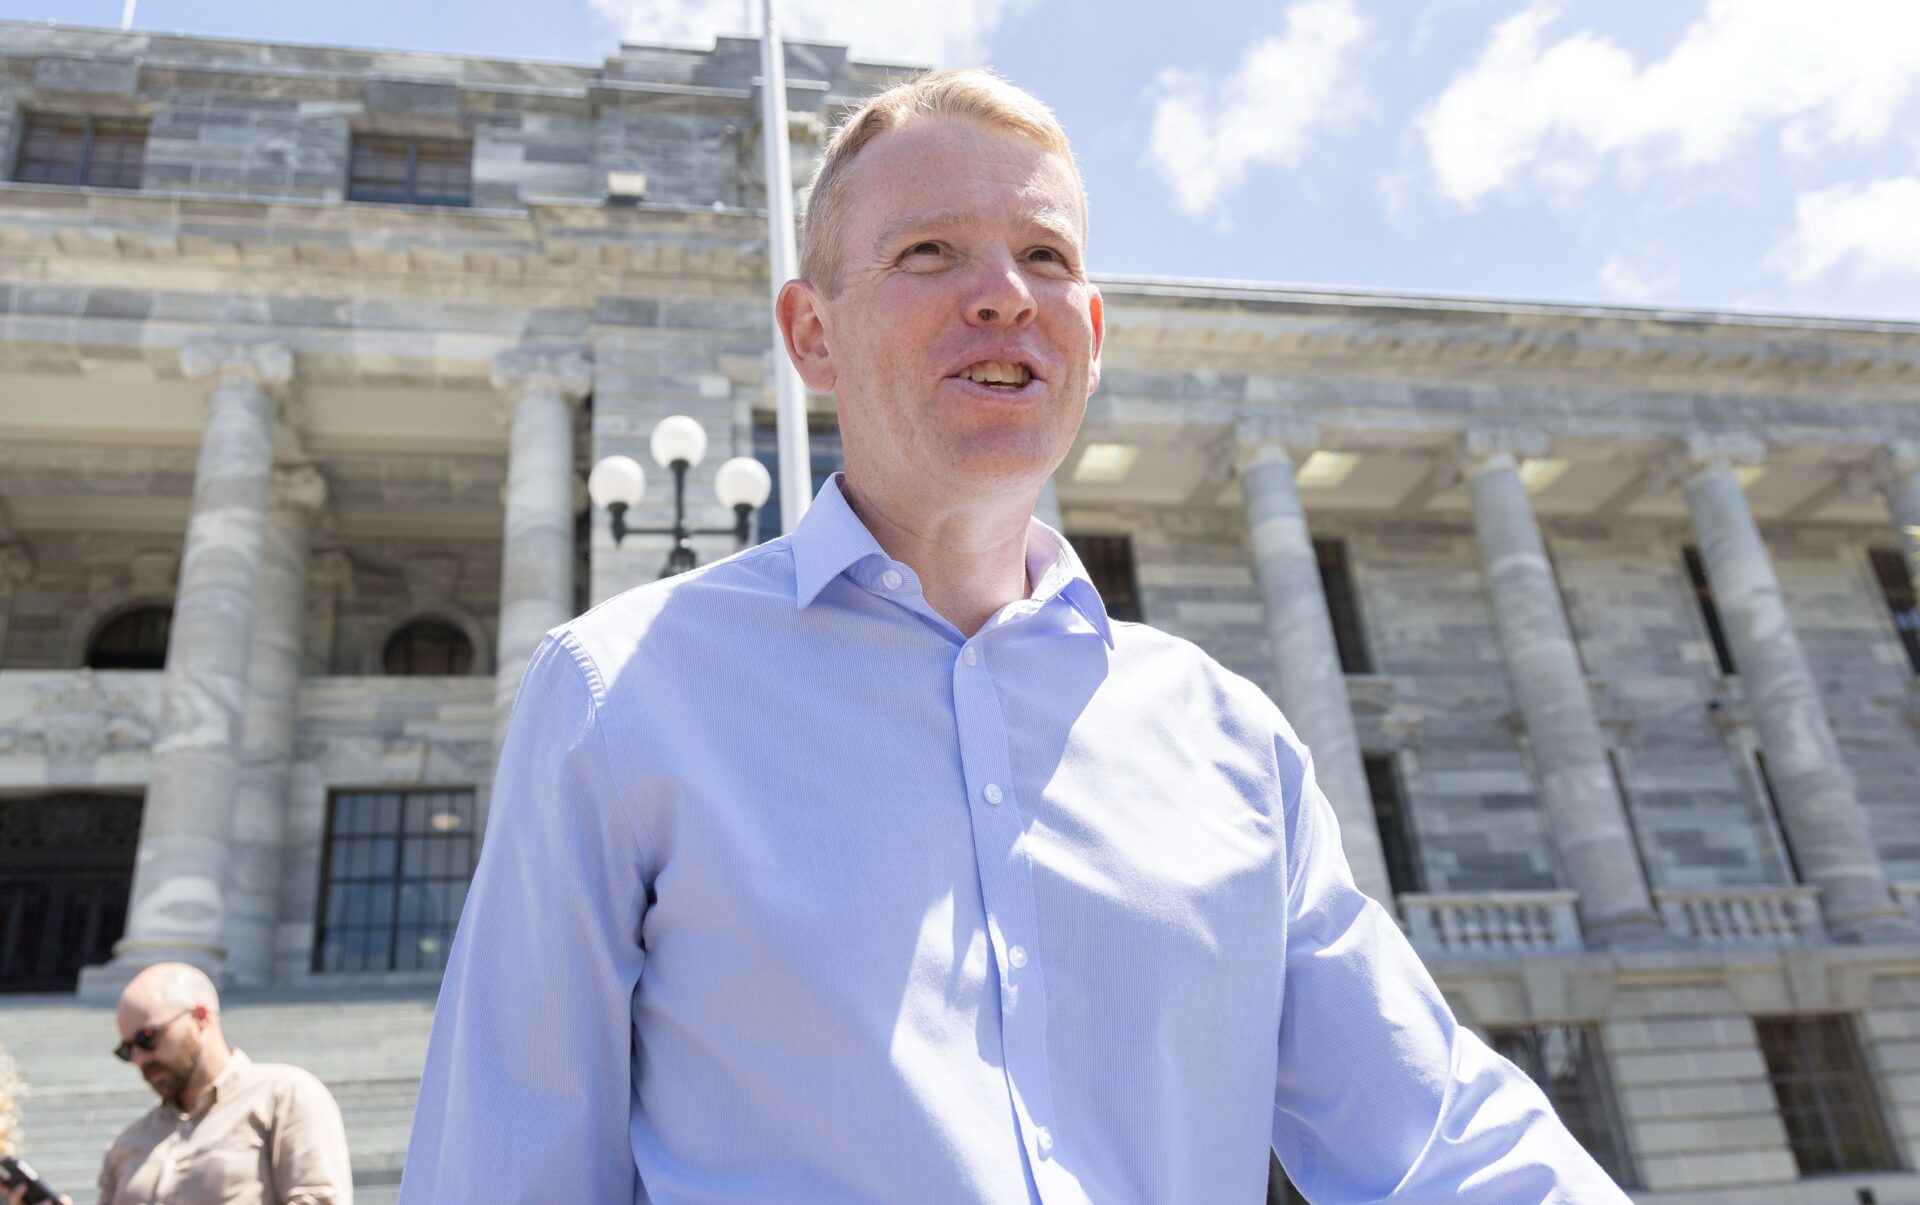 Chris Hipkins reemplazará a Jacinda Ardern al frente del gobierno de Nueva Zelanda